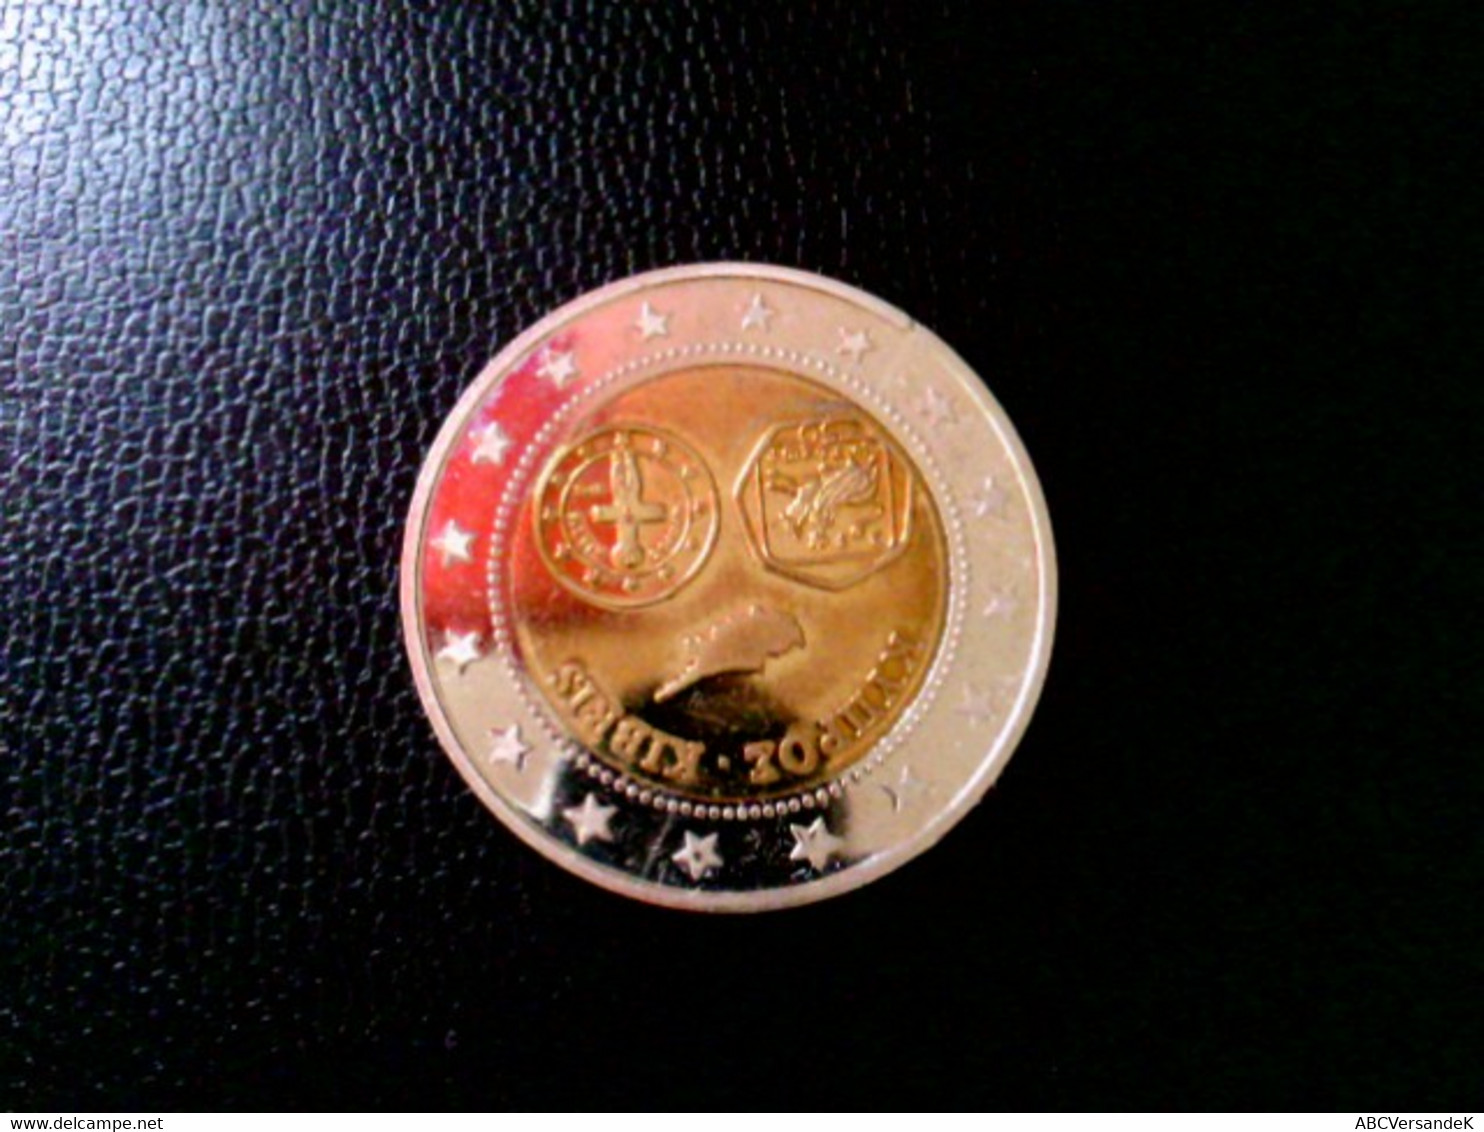 Münze: Probeprägung Euroeinführung Zypern Cyprus Kibris, 2008, Bimetall - Numismatica